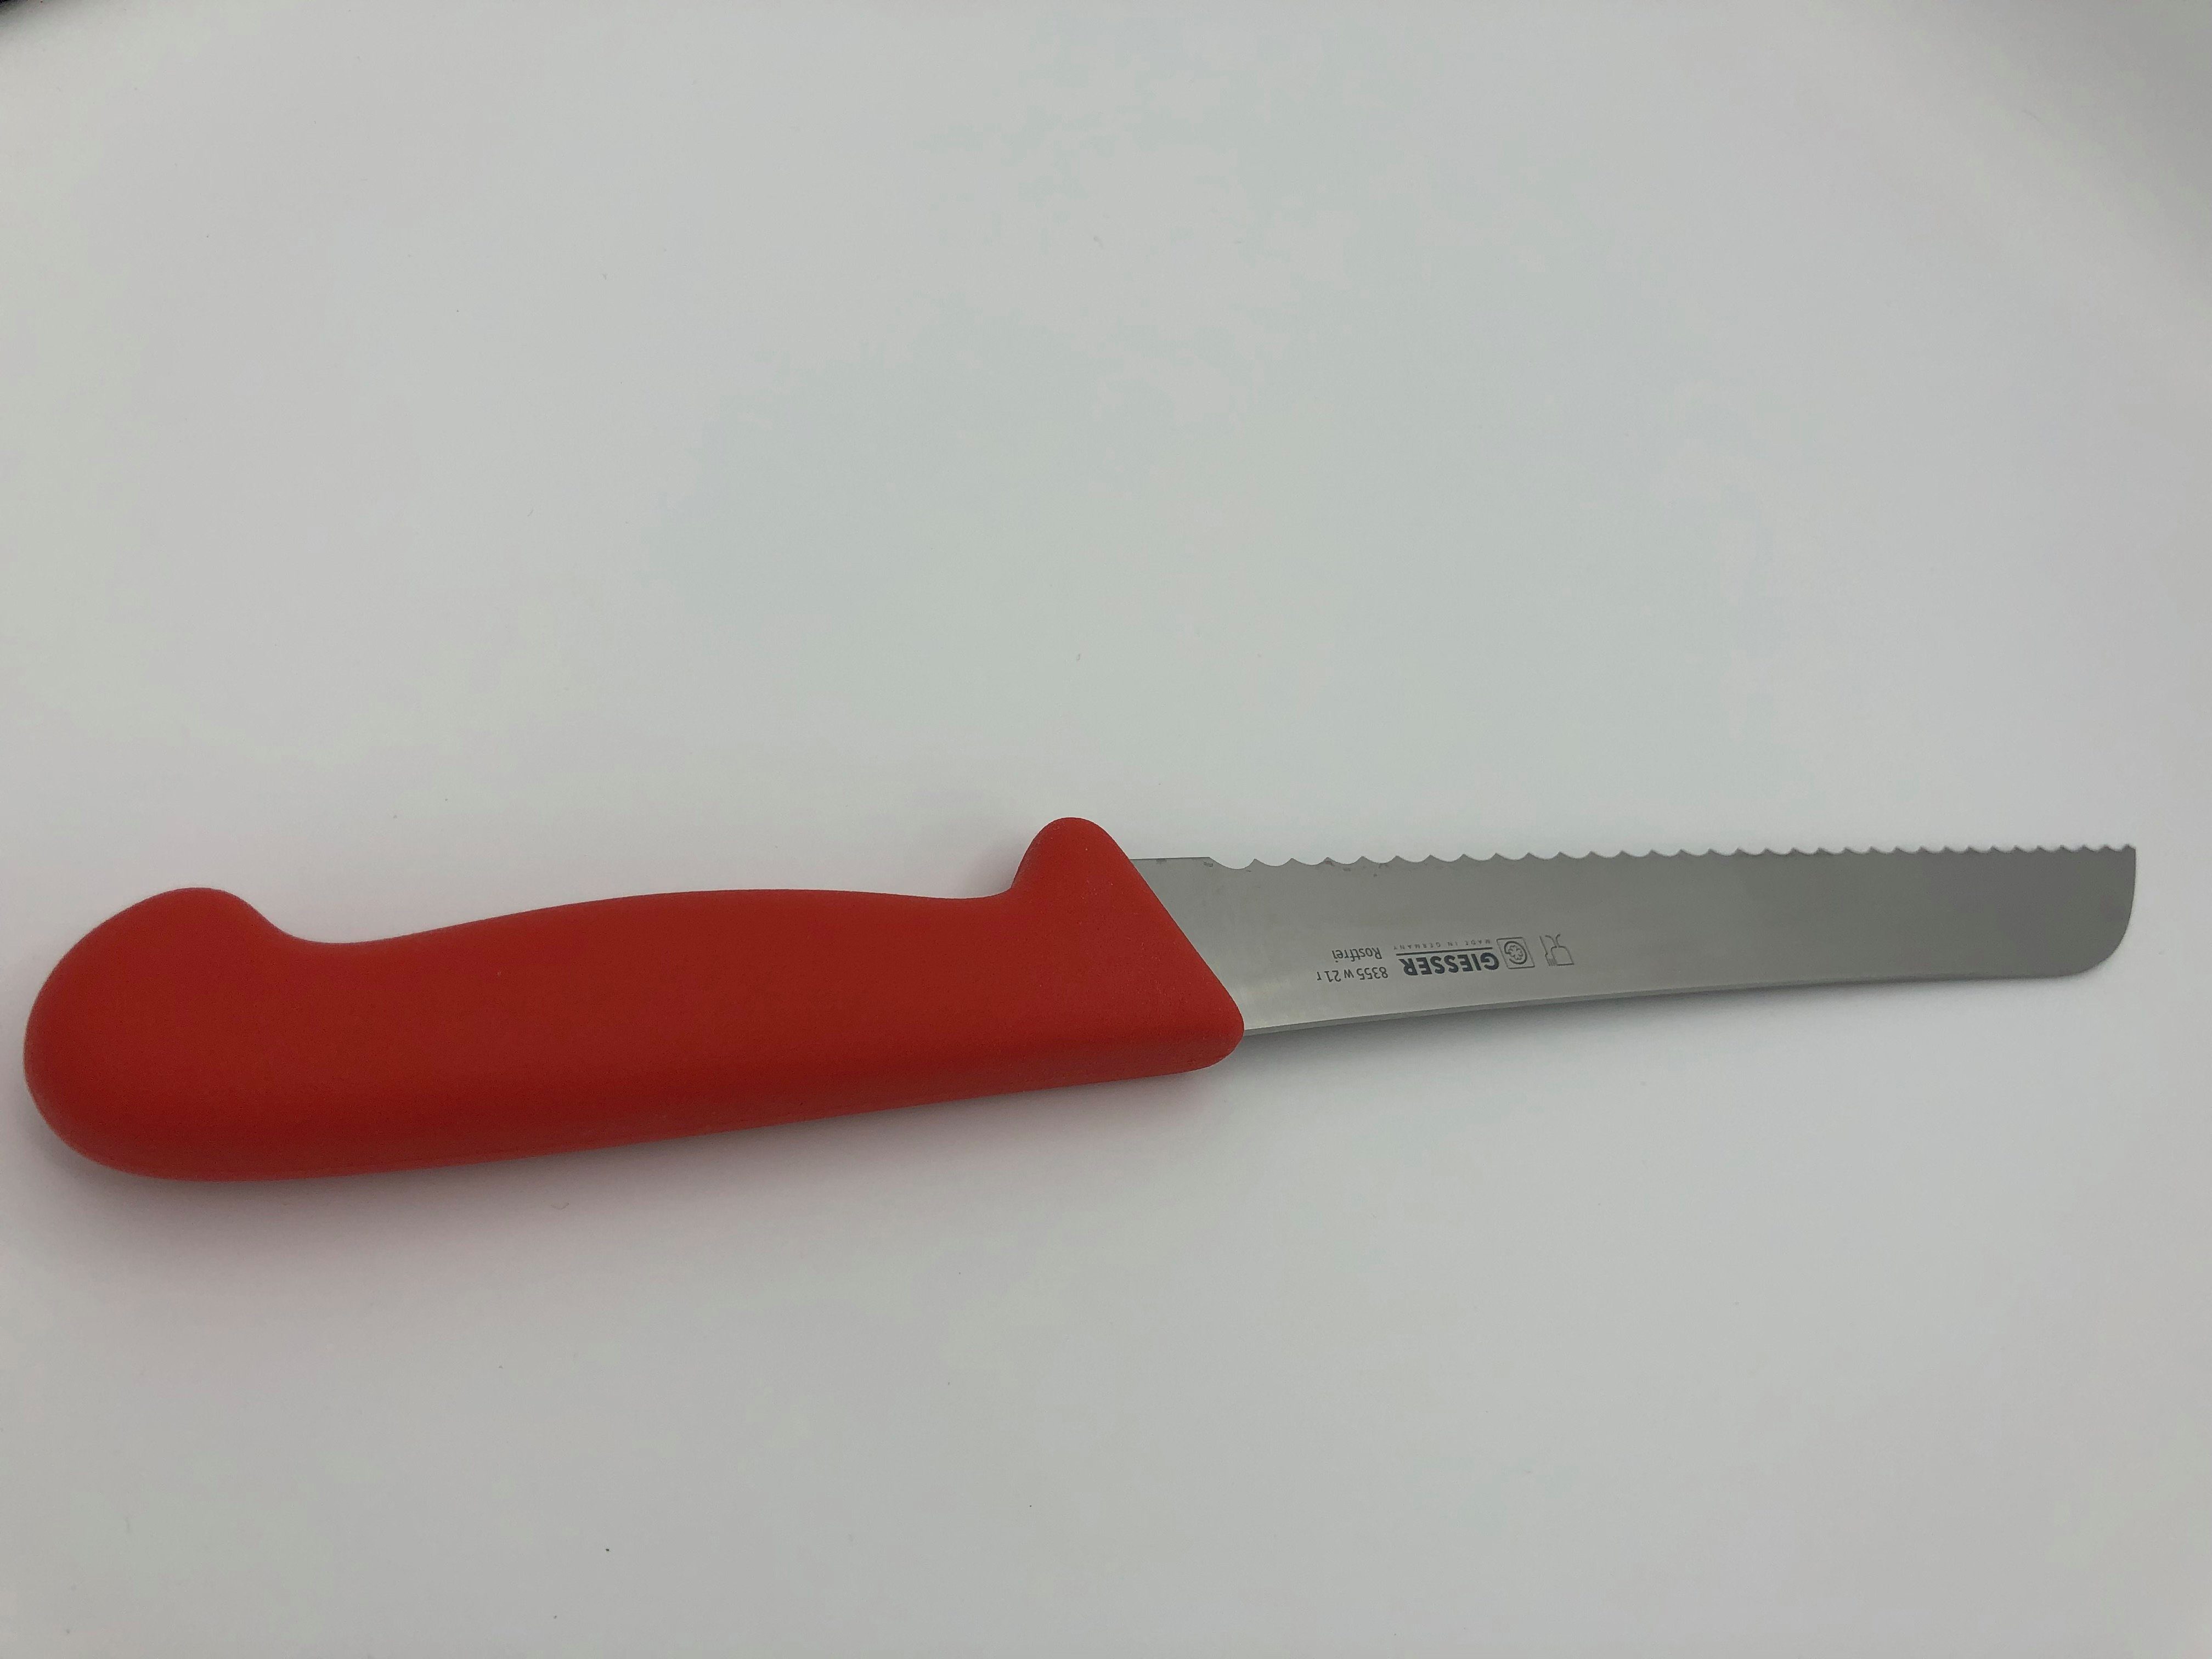 Giesser Messer Brotmesser Konditormesser 8355, Kunststoffgriff, 6 mm Welle, ideal zum Brot schneiden